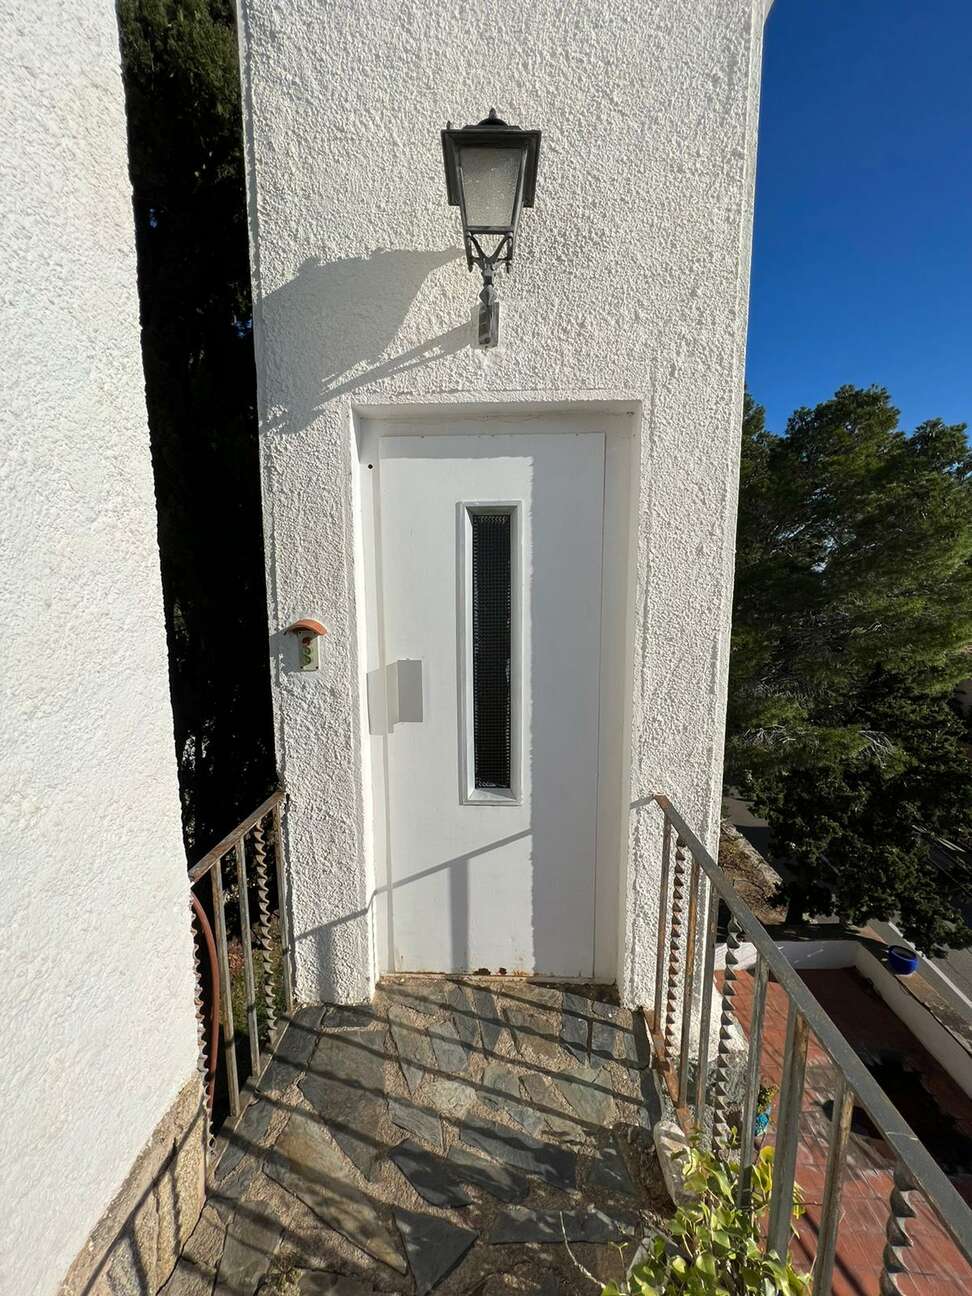 Casa estilo mediterraneo con vistas al mar en venta Almadrava